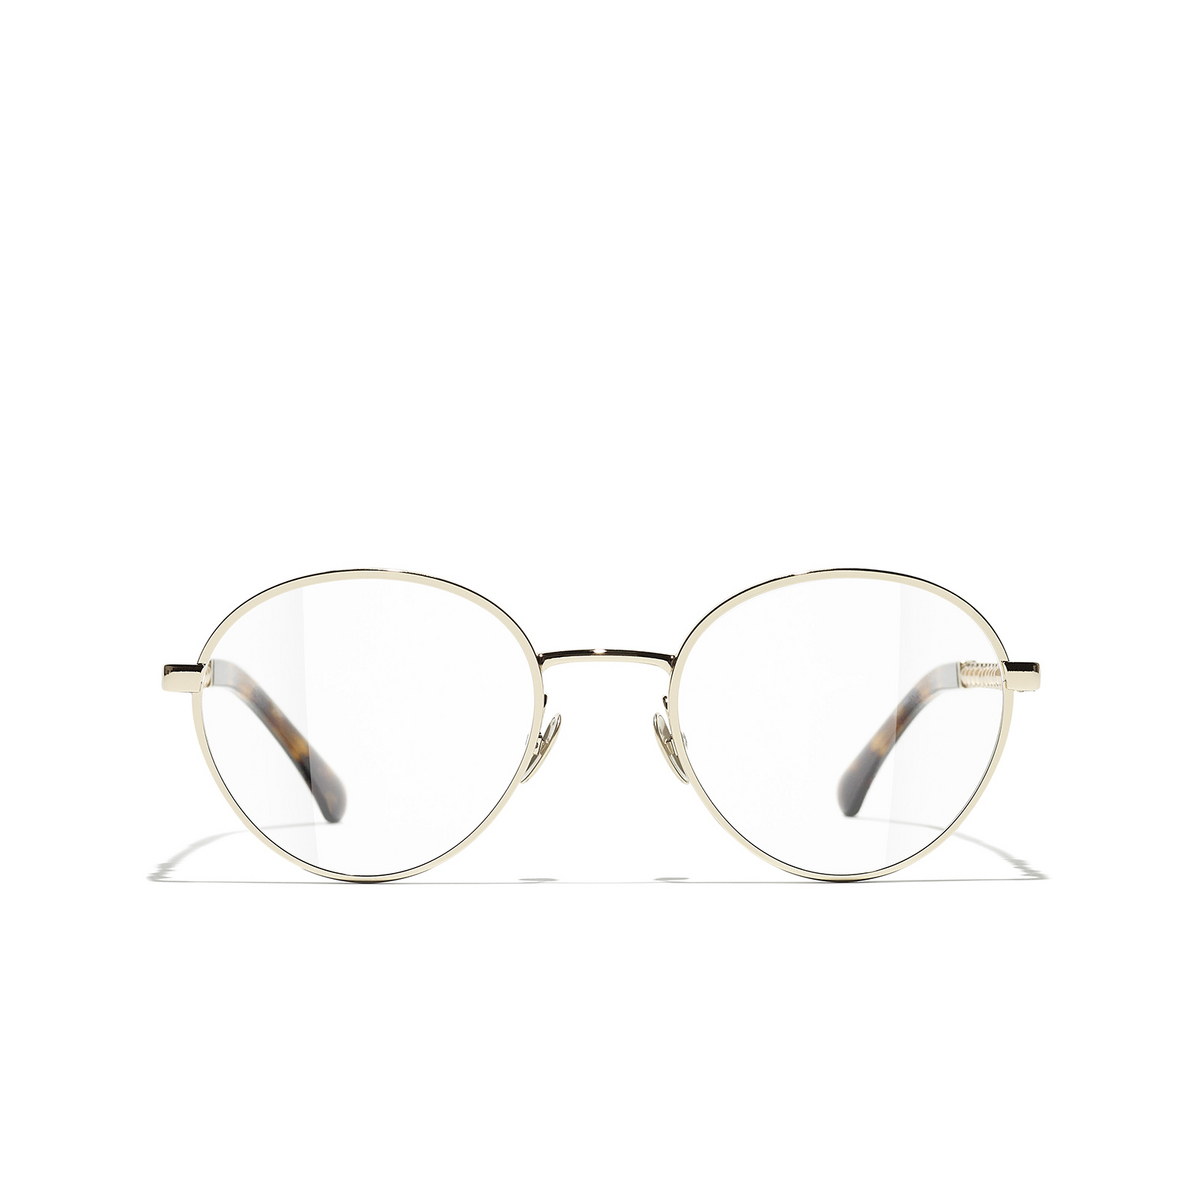 CHANEL round Eyeglasses C422 Gold & Dark Tortoise - front view